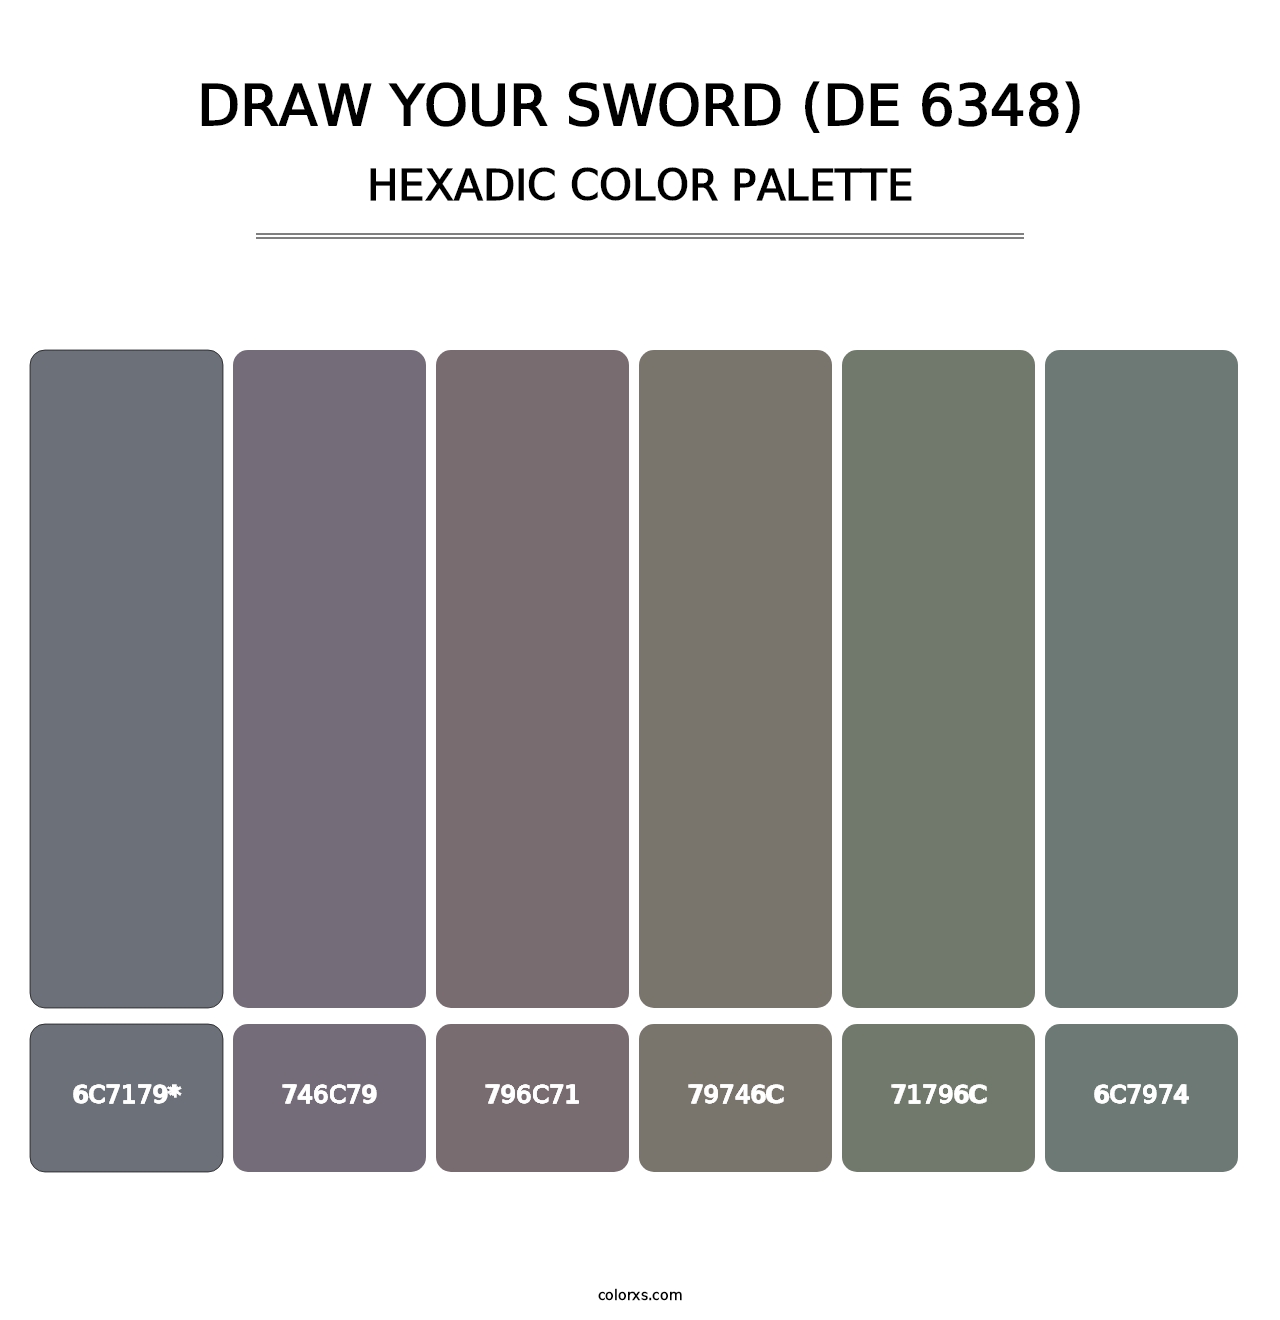 Draw Your Sword (DE 6348) - Hexadic Color Palette